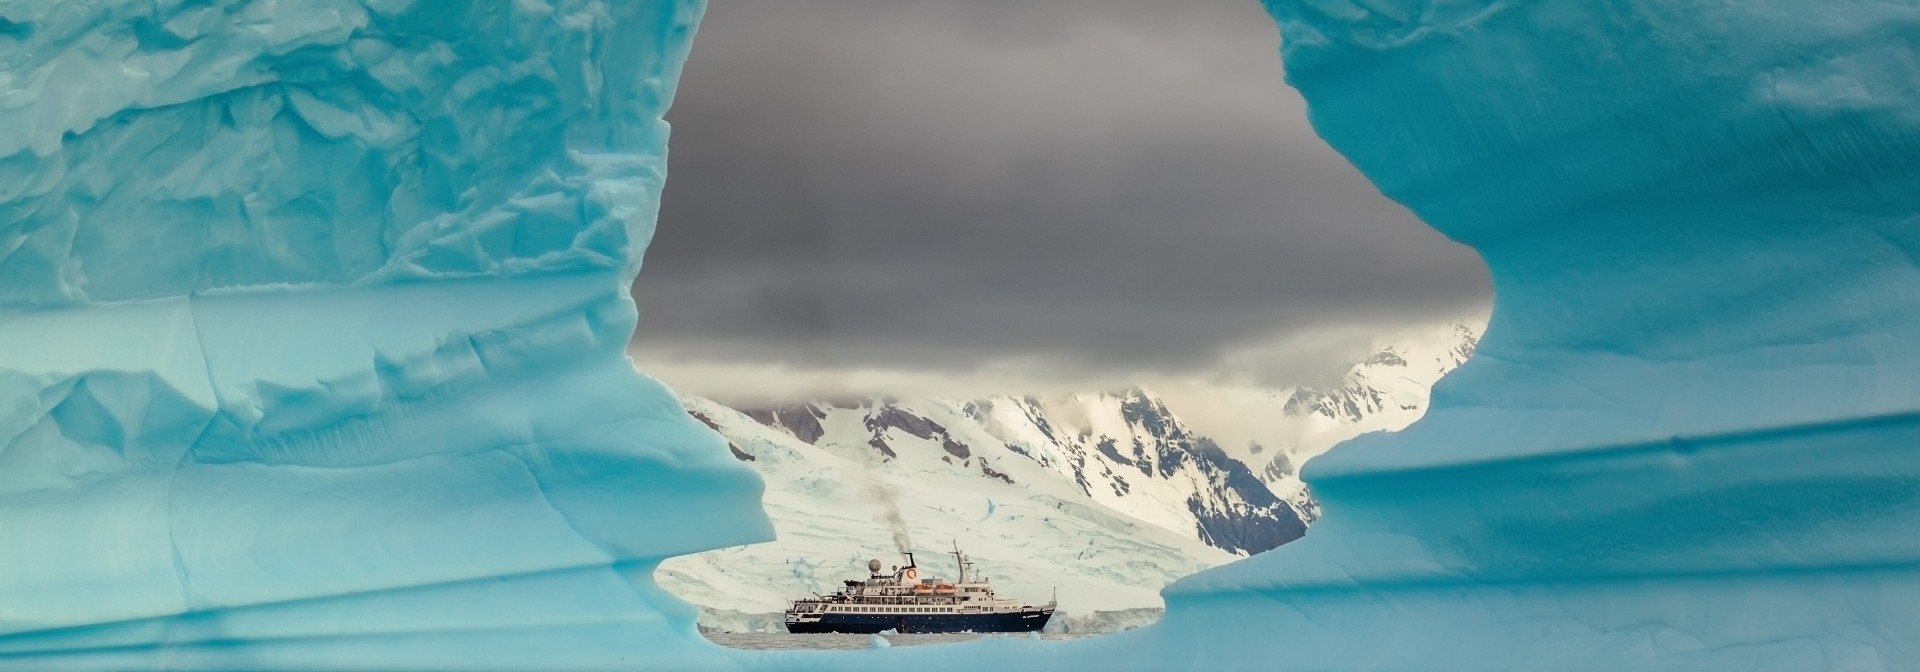 Imagen de un iceberg y un barco